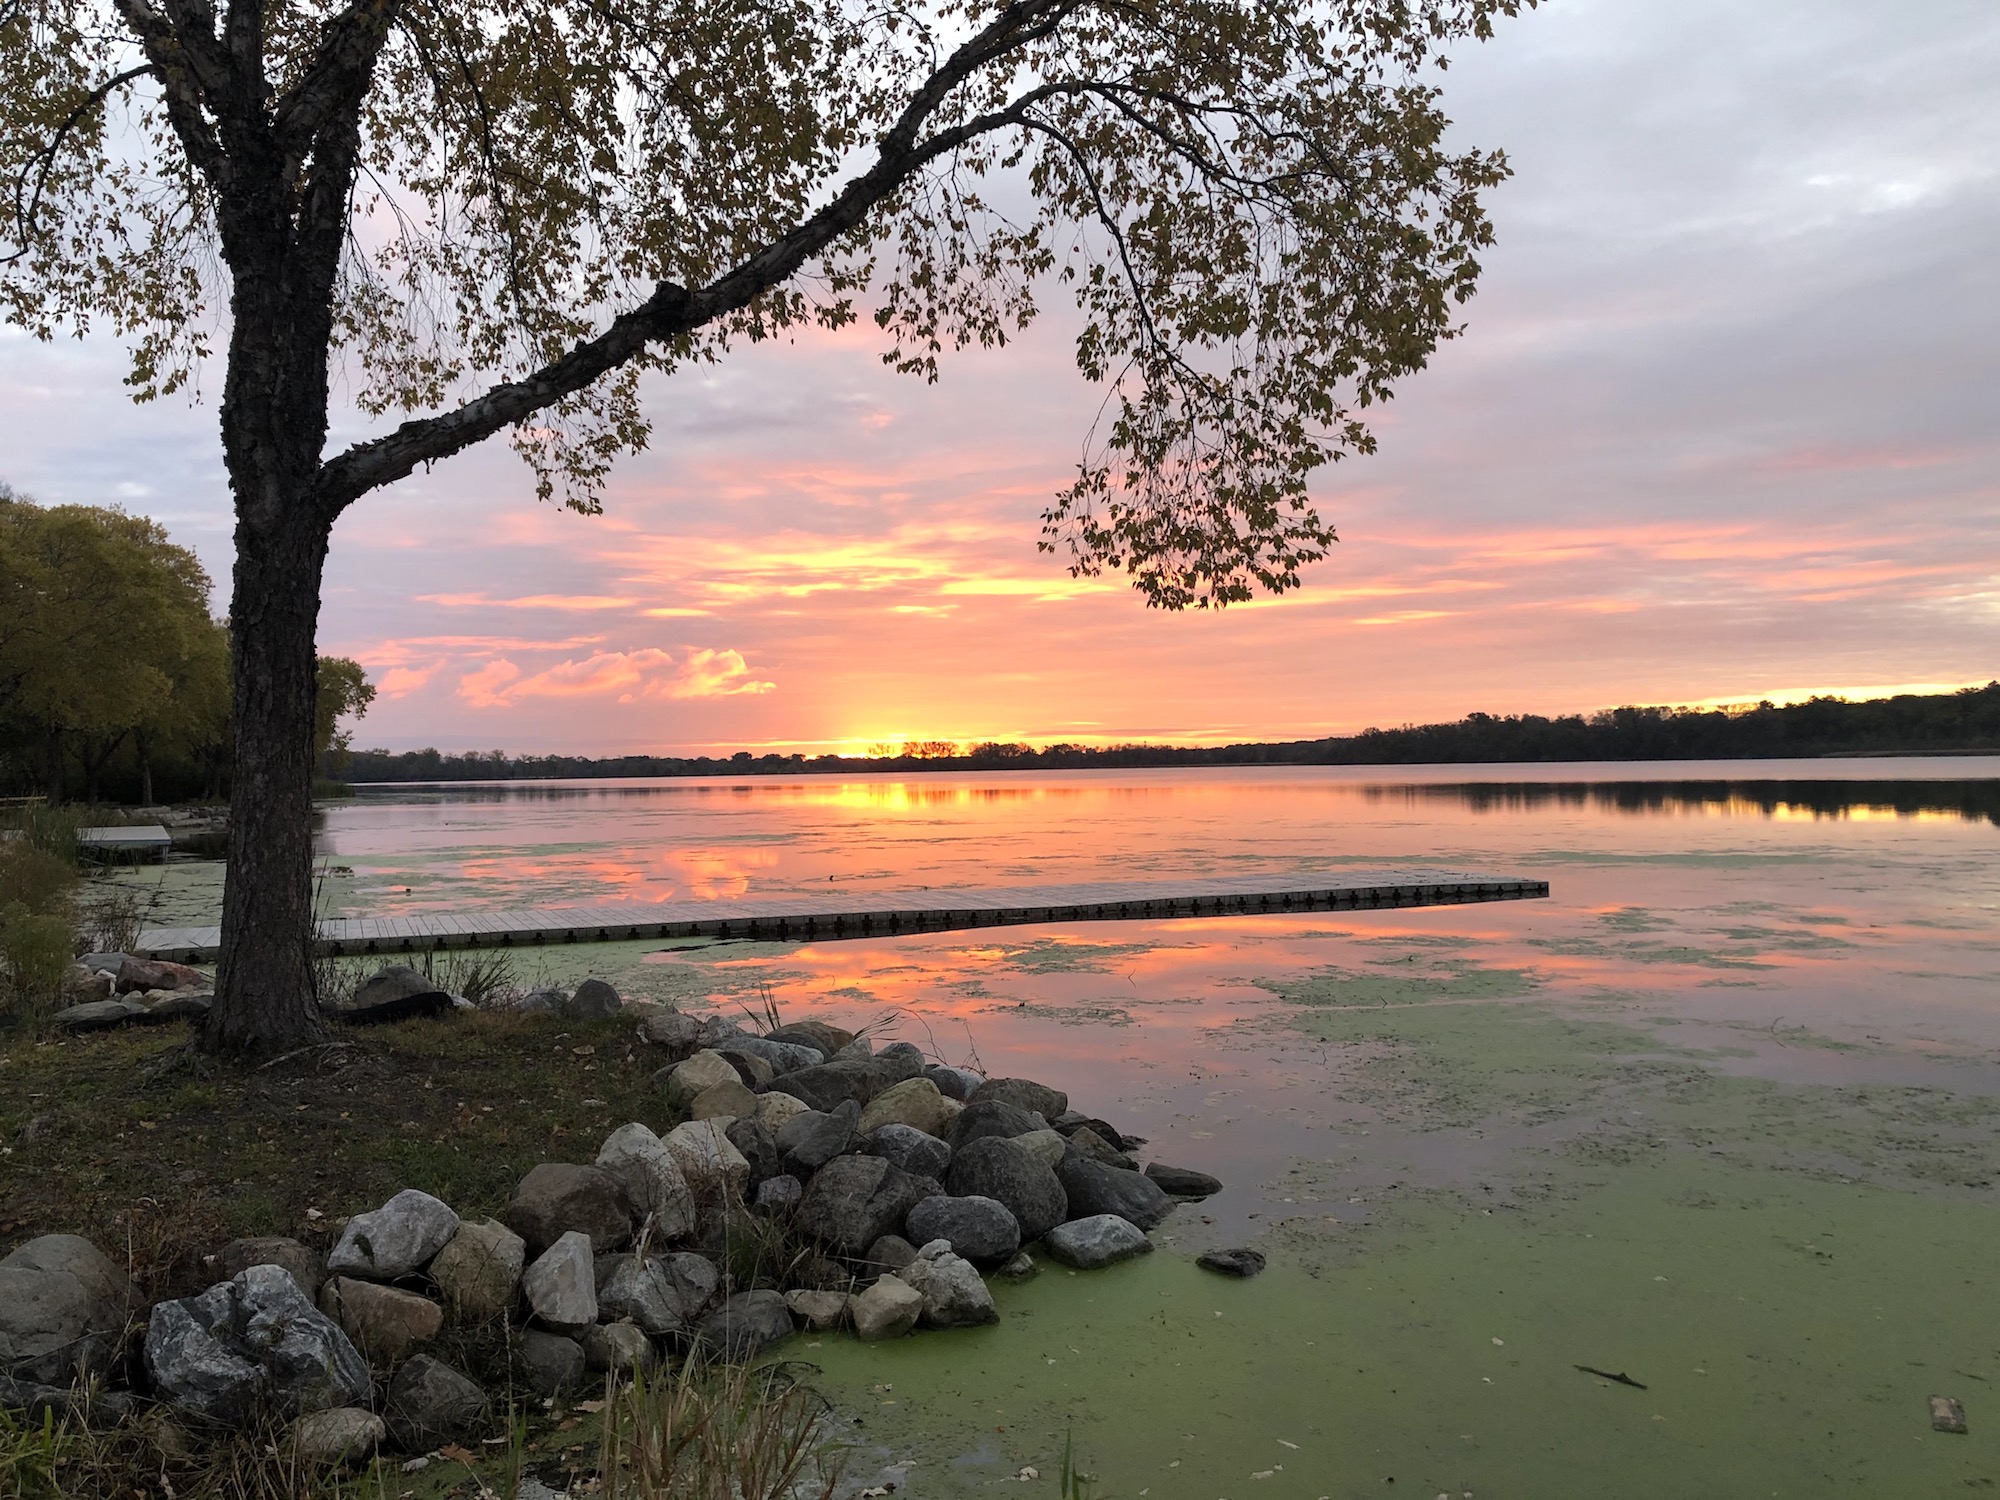 Lake Wingra on October 17, 2019.